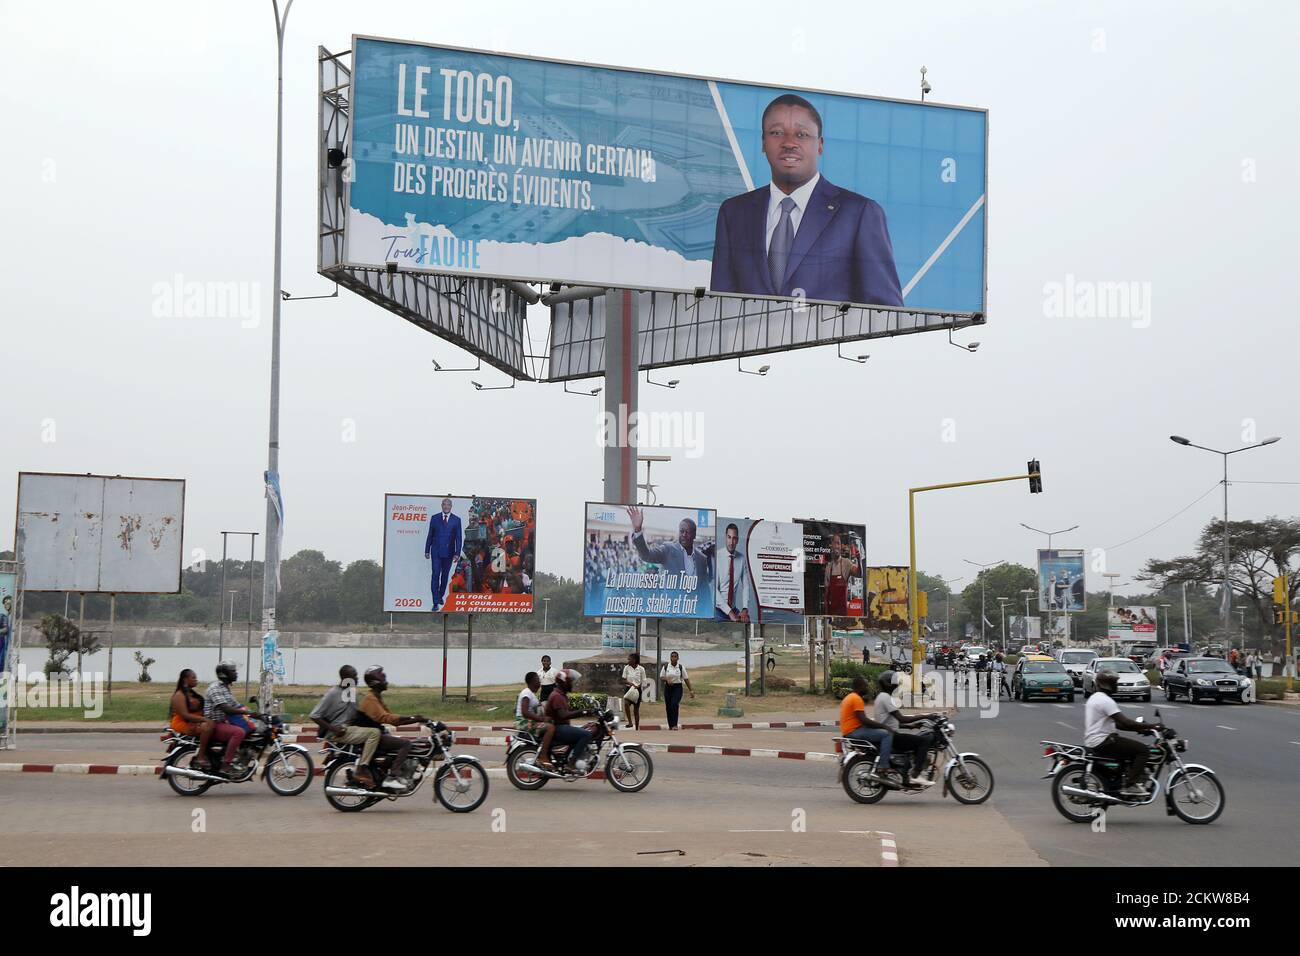 Una cartelera del presidente Faure Gnassingbe, candidato presidencial de la UNIR (Unión por la República), está representada en una calle en Lomé, Togo, el 19 de febrero de 2020. Foto tomada el 19 de febrero de 2020. REUTERS/Luc Gnago Foto de stock